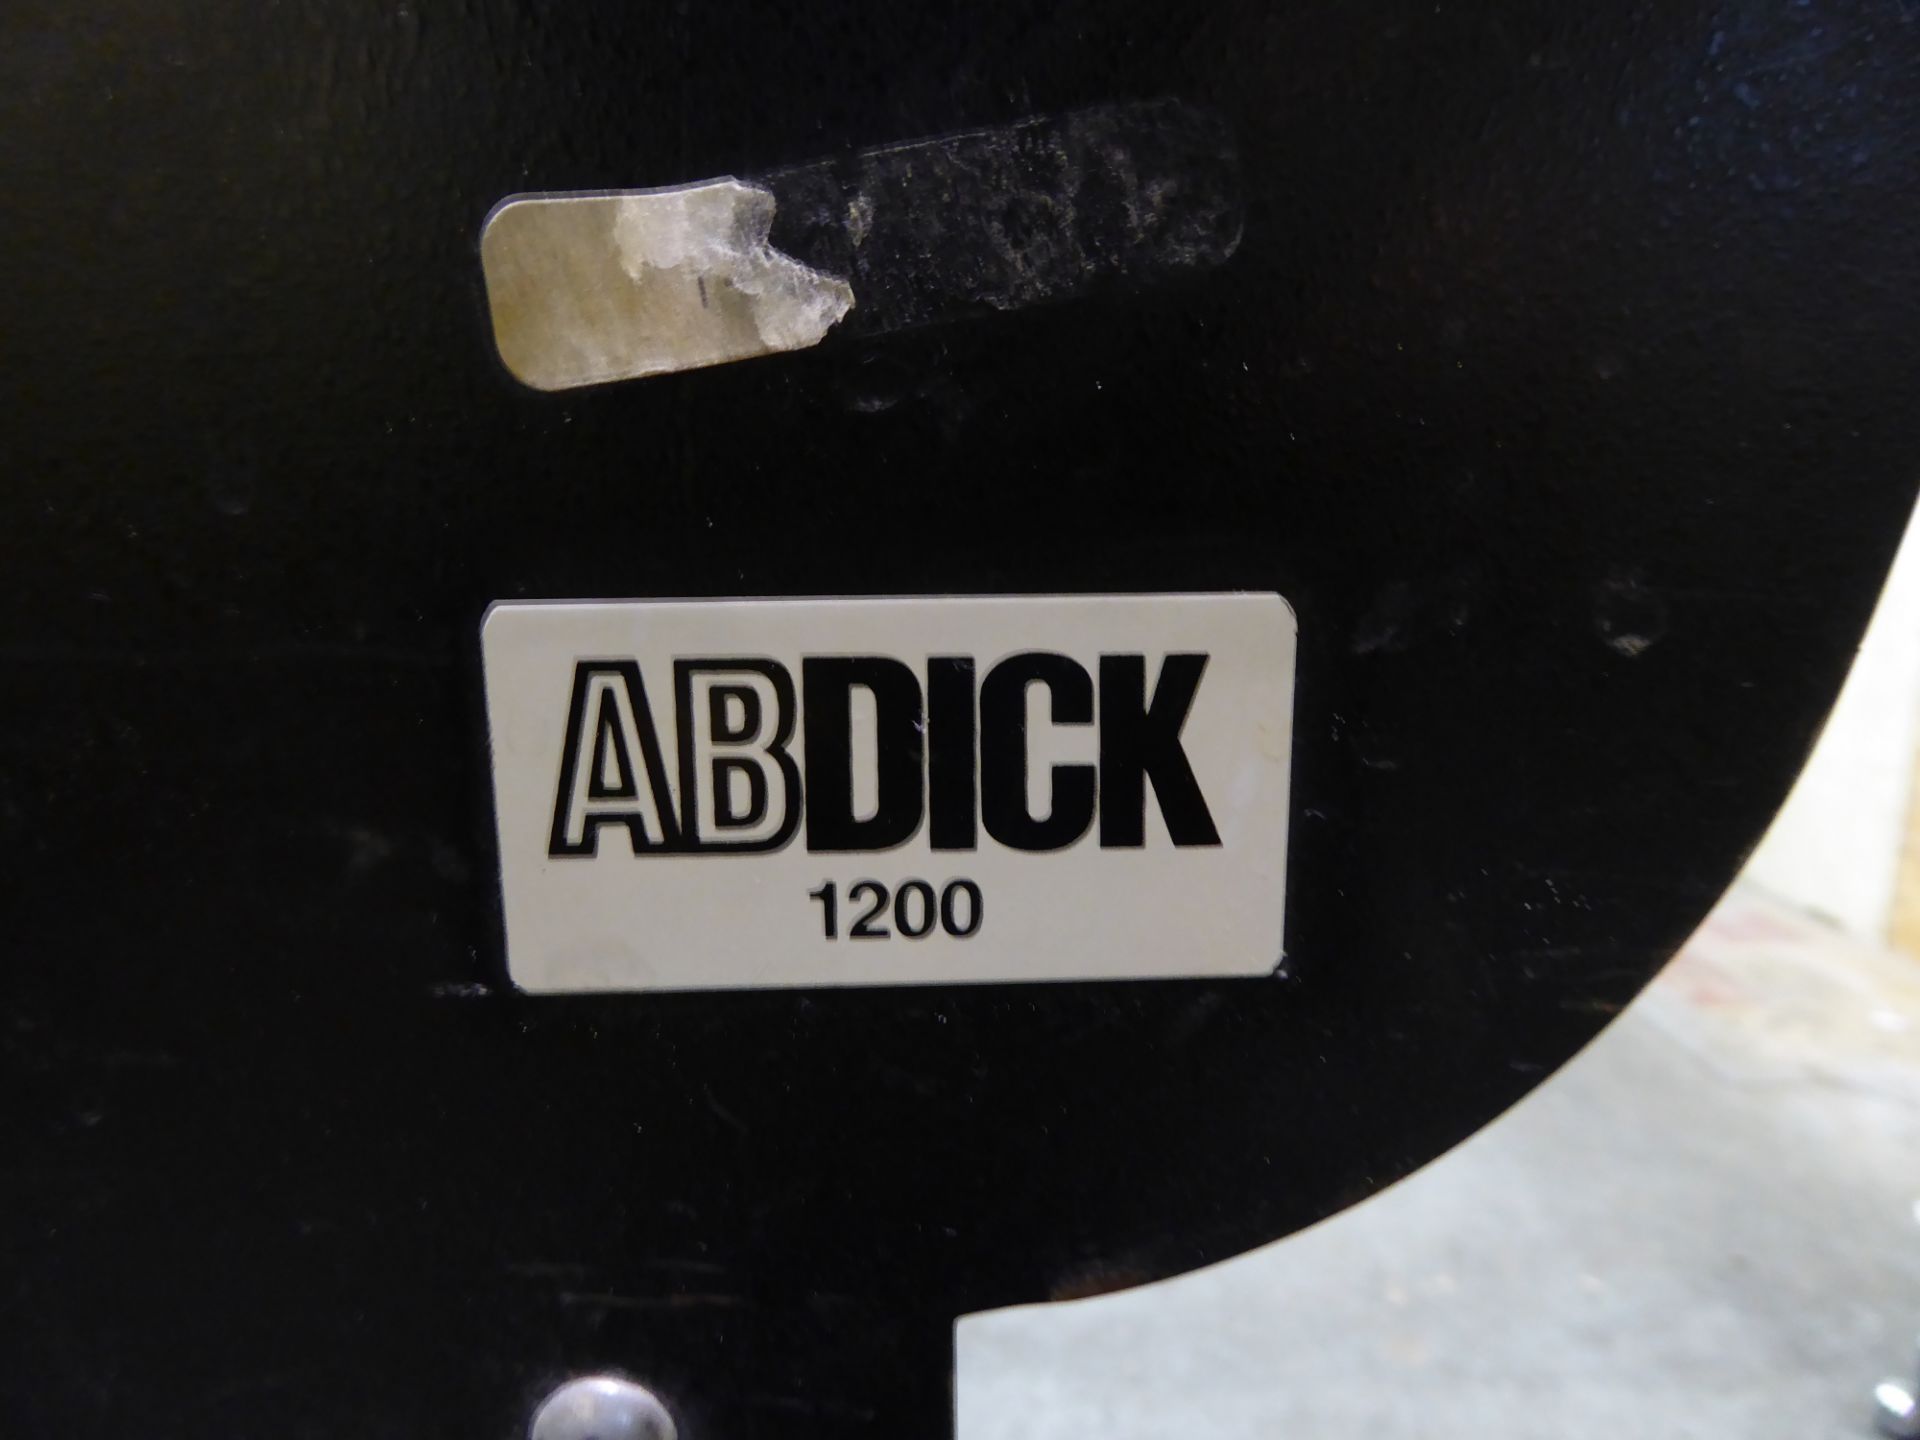 ABDick Envelope Feeder, m/n 1200 - Image 3 of 3